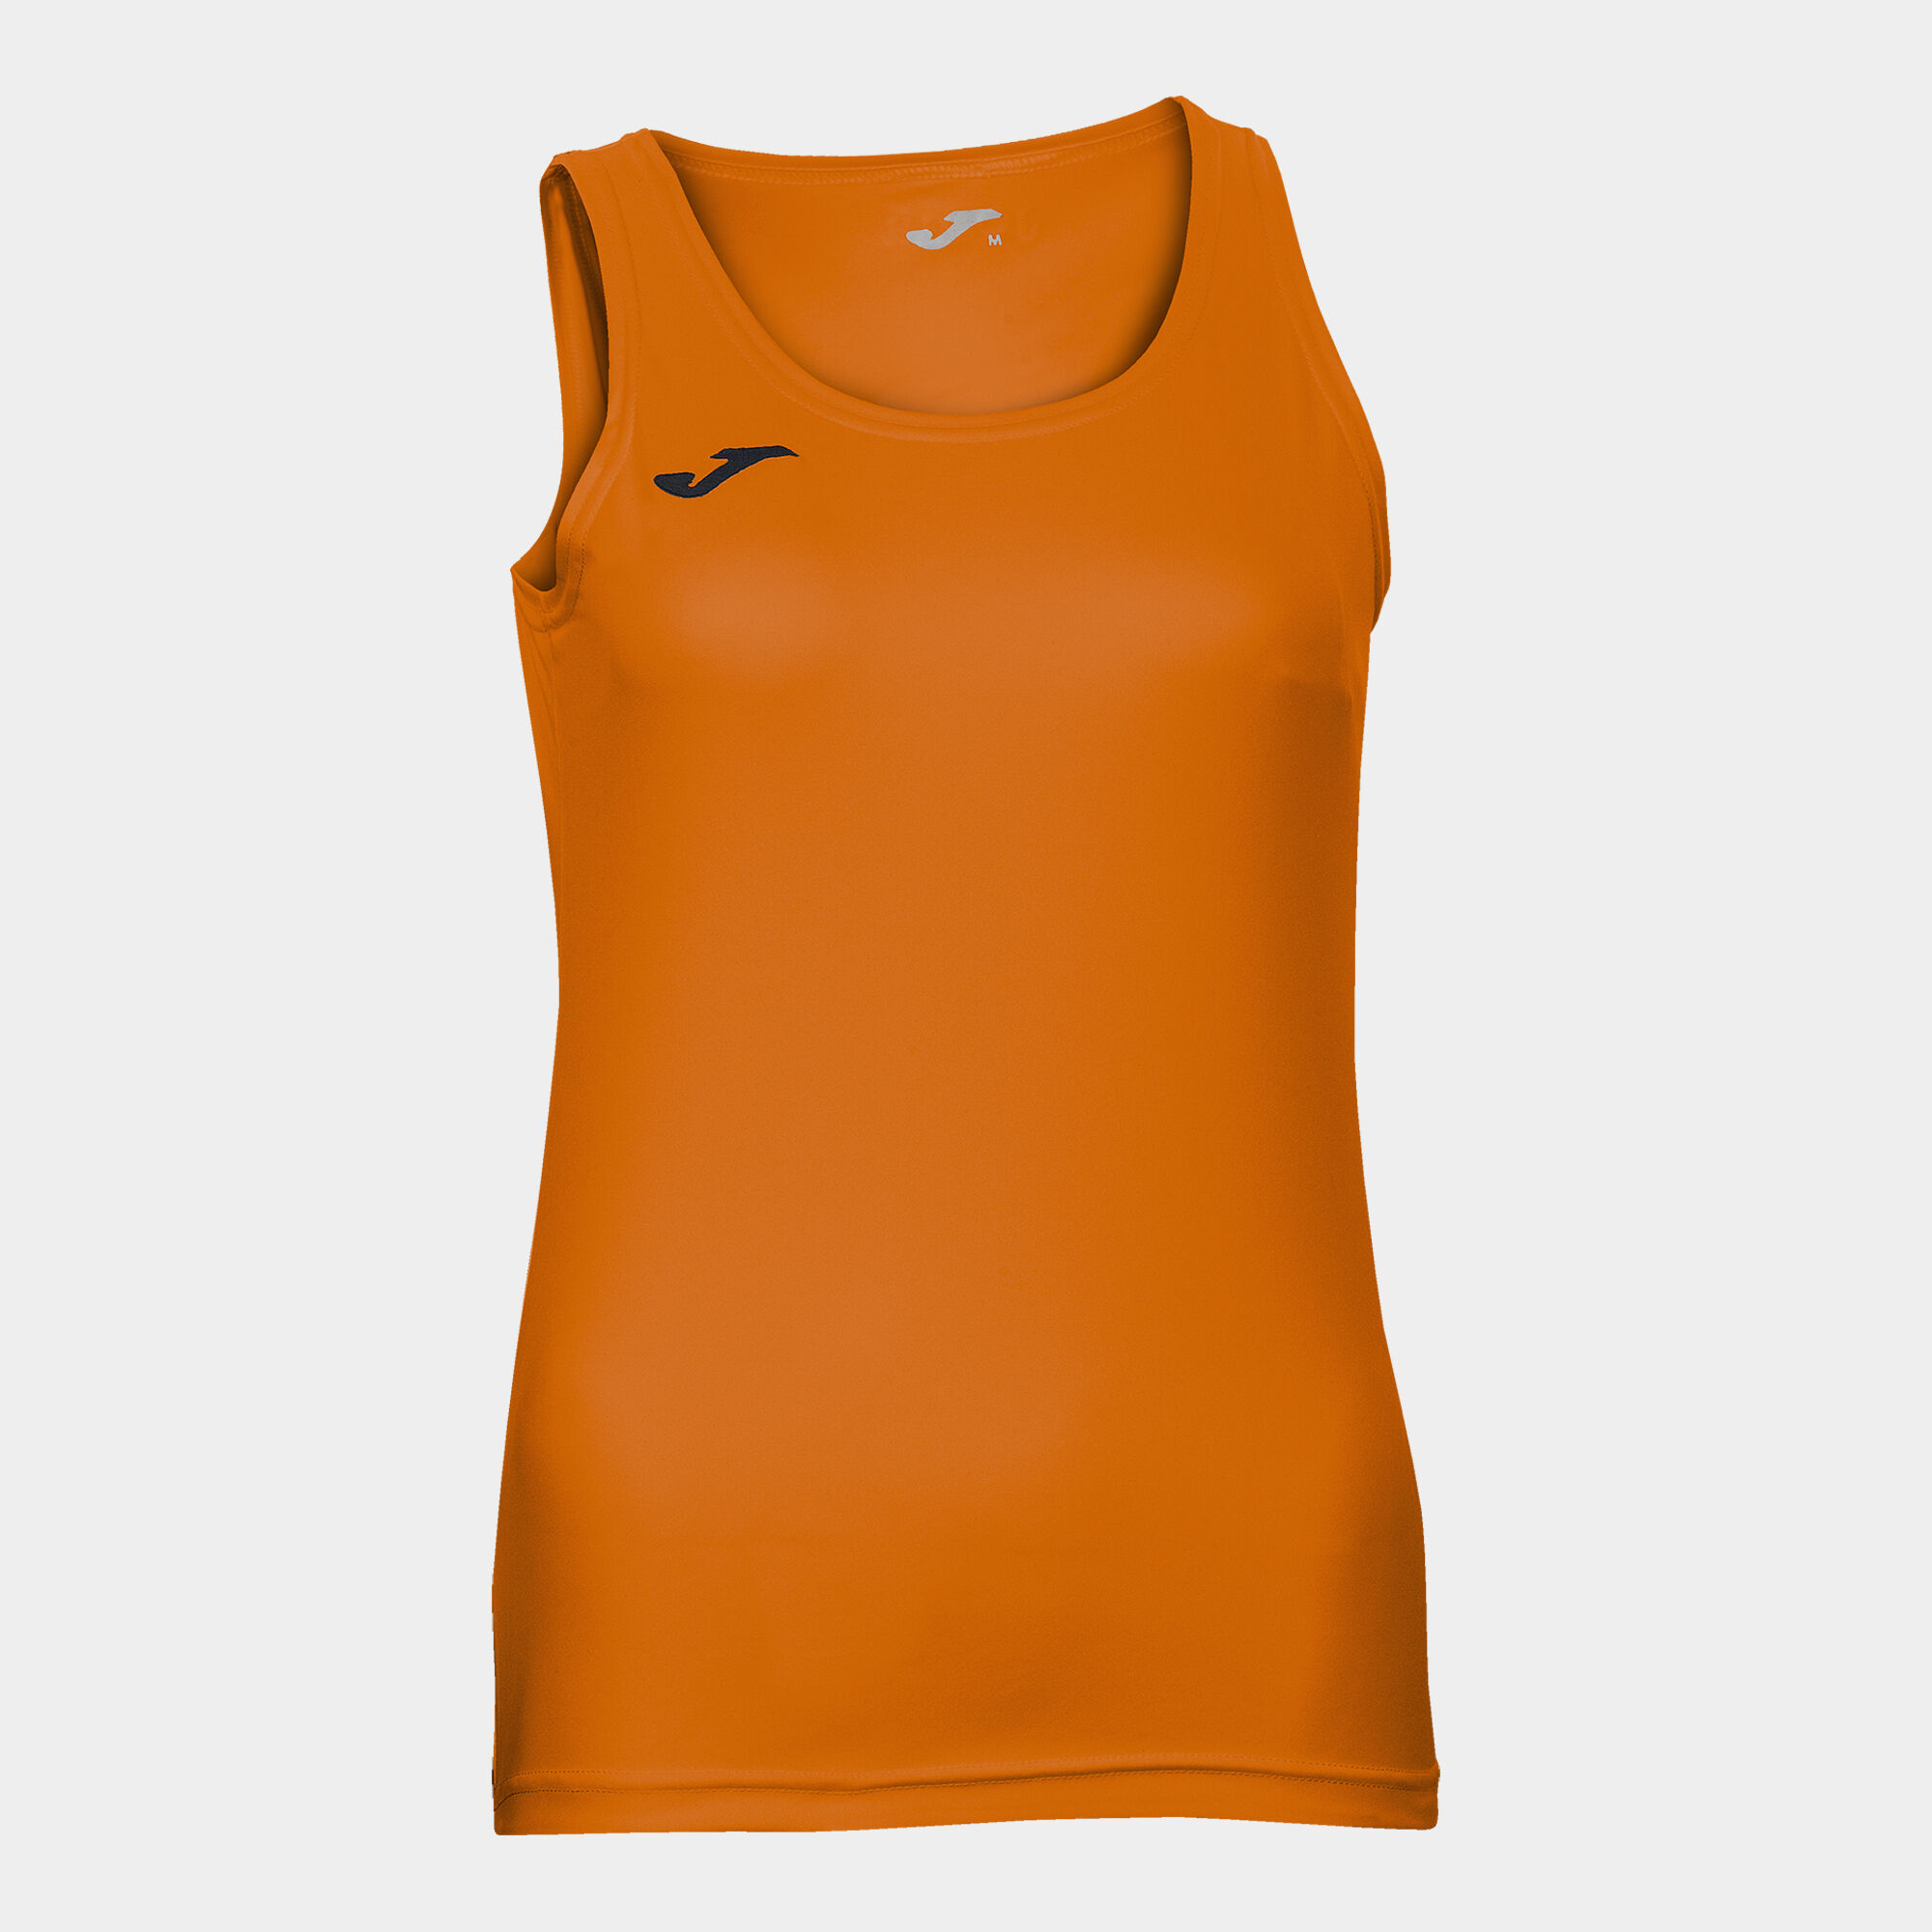 Shirt s/m frau Diana orange